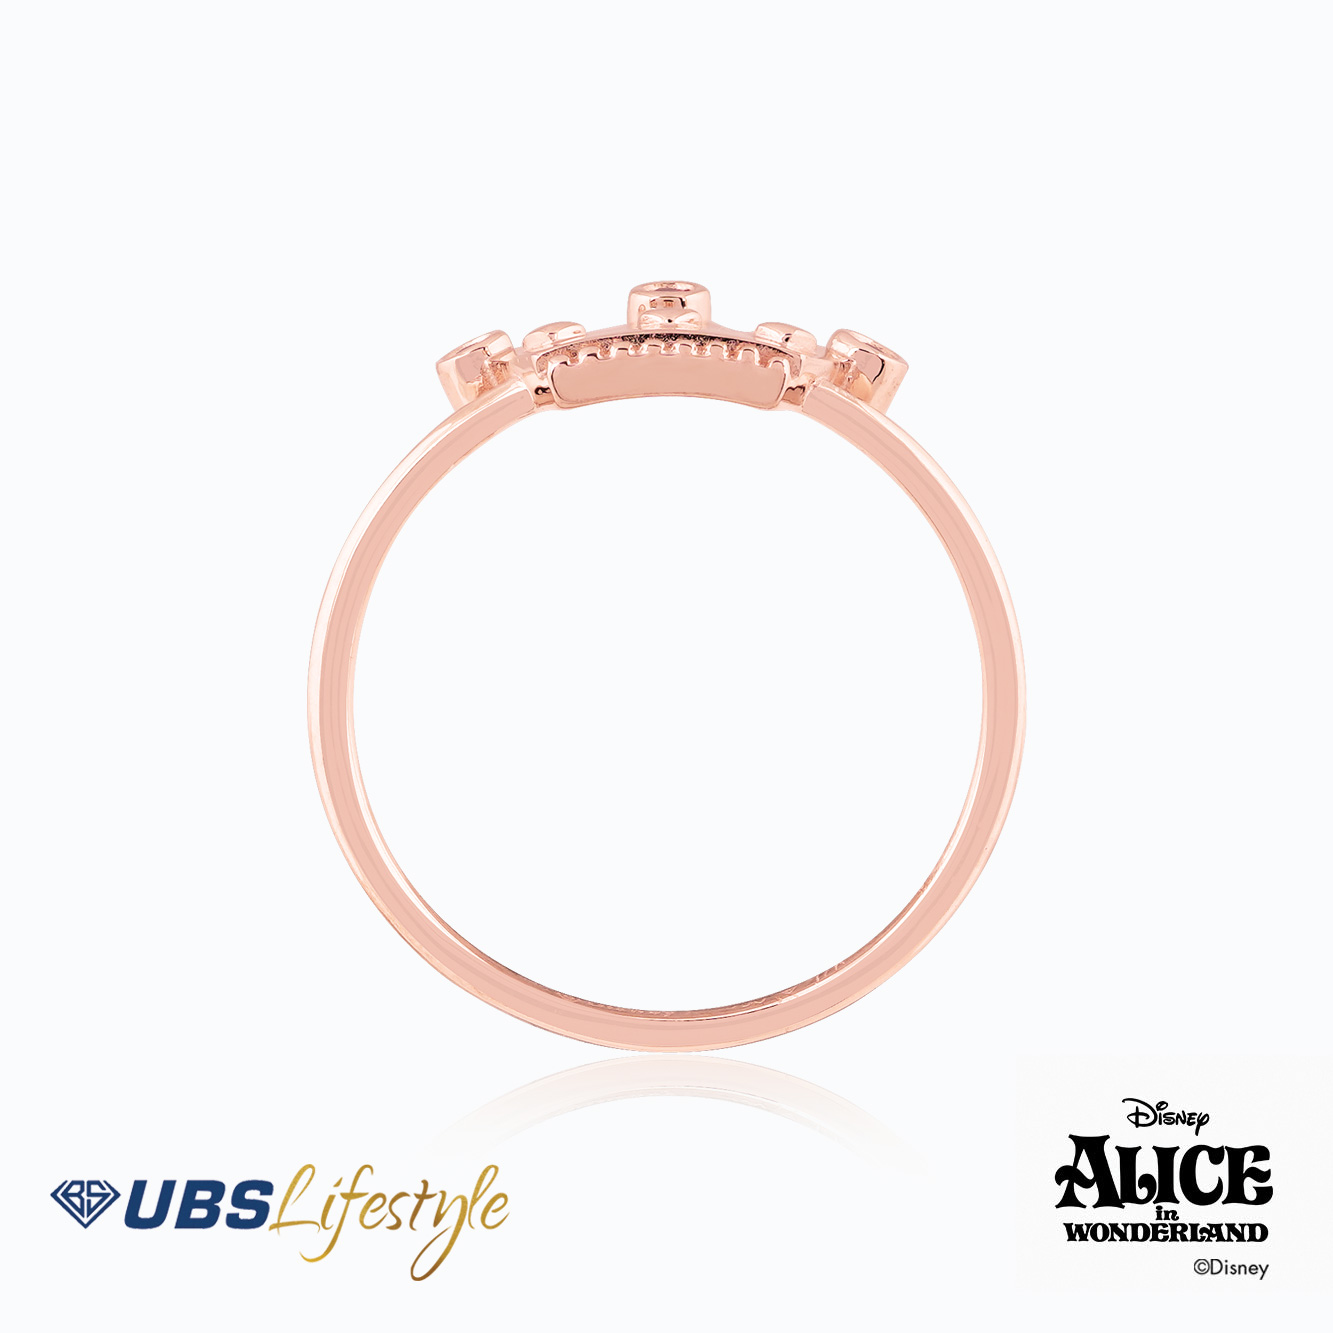 UBS Cincin Emas Disney Alice - Ccy0178R - 17K